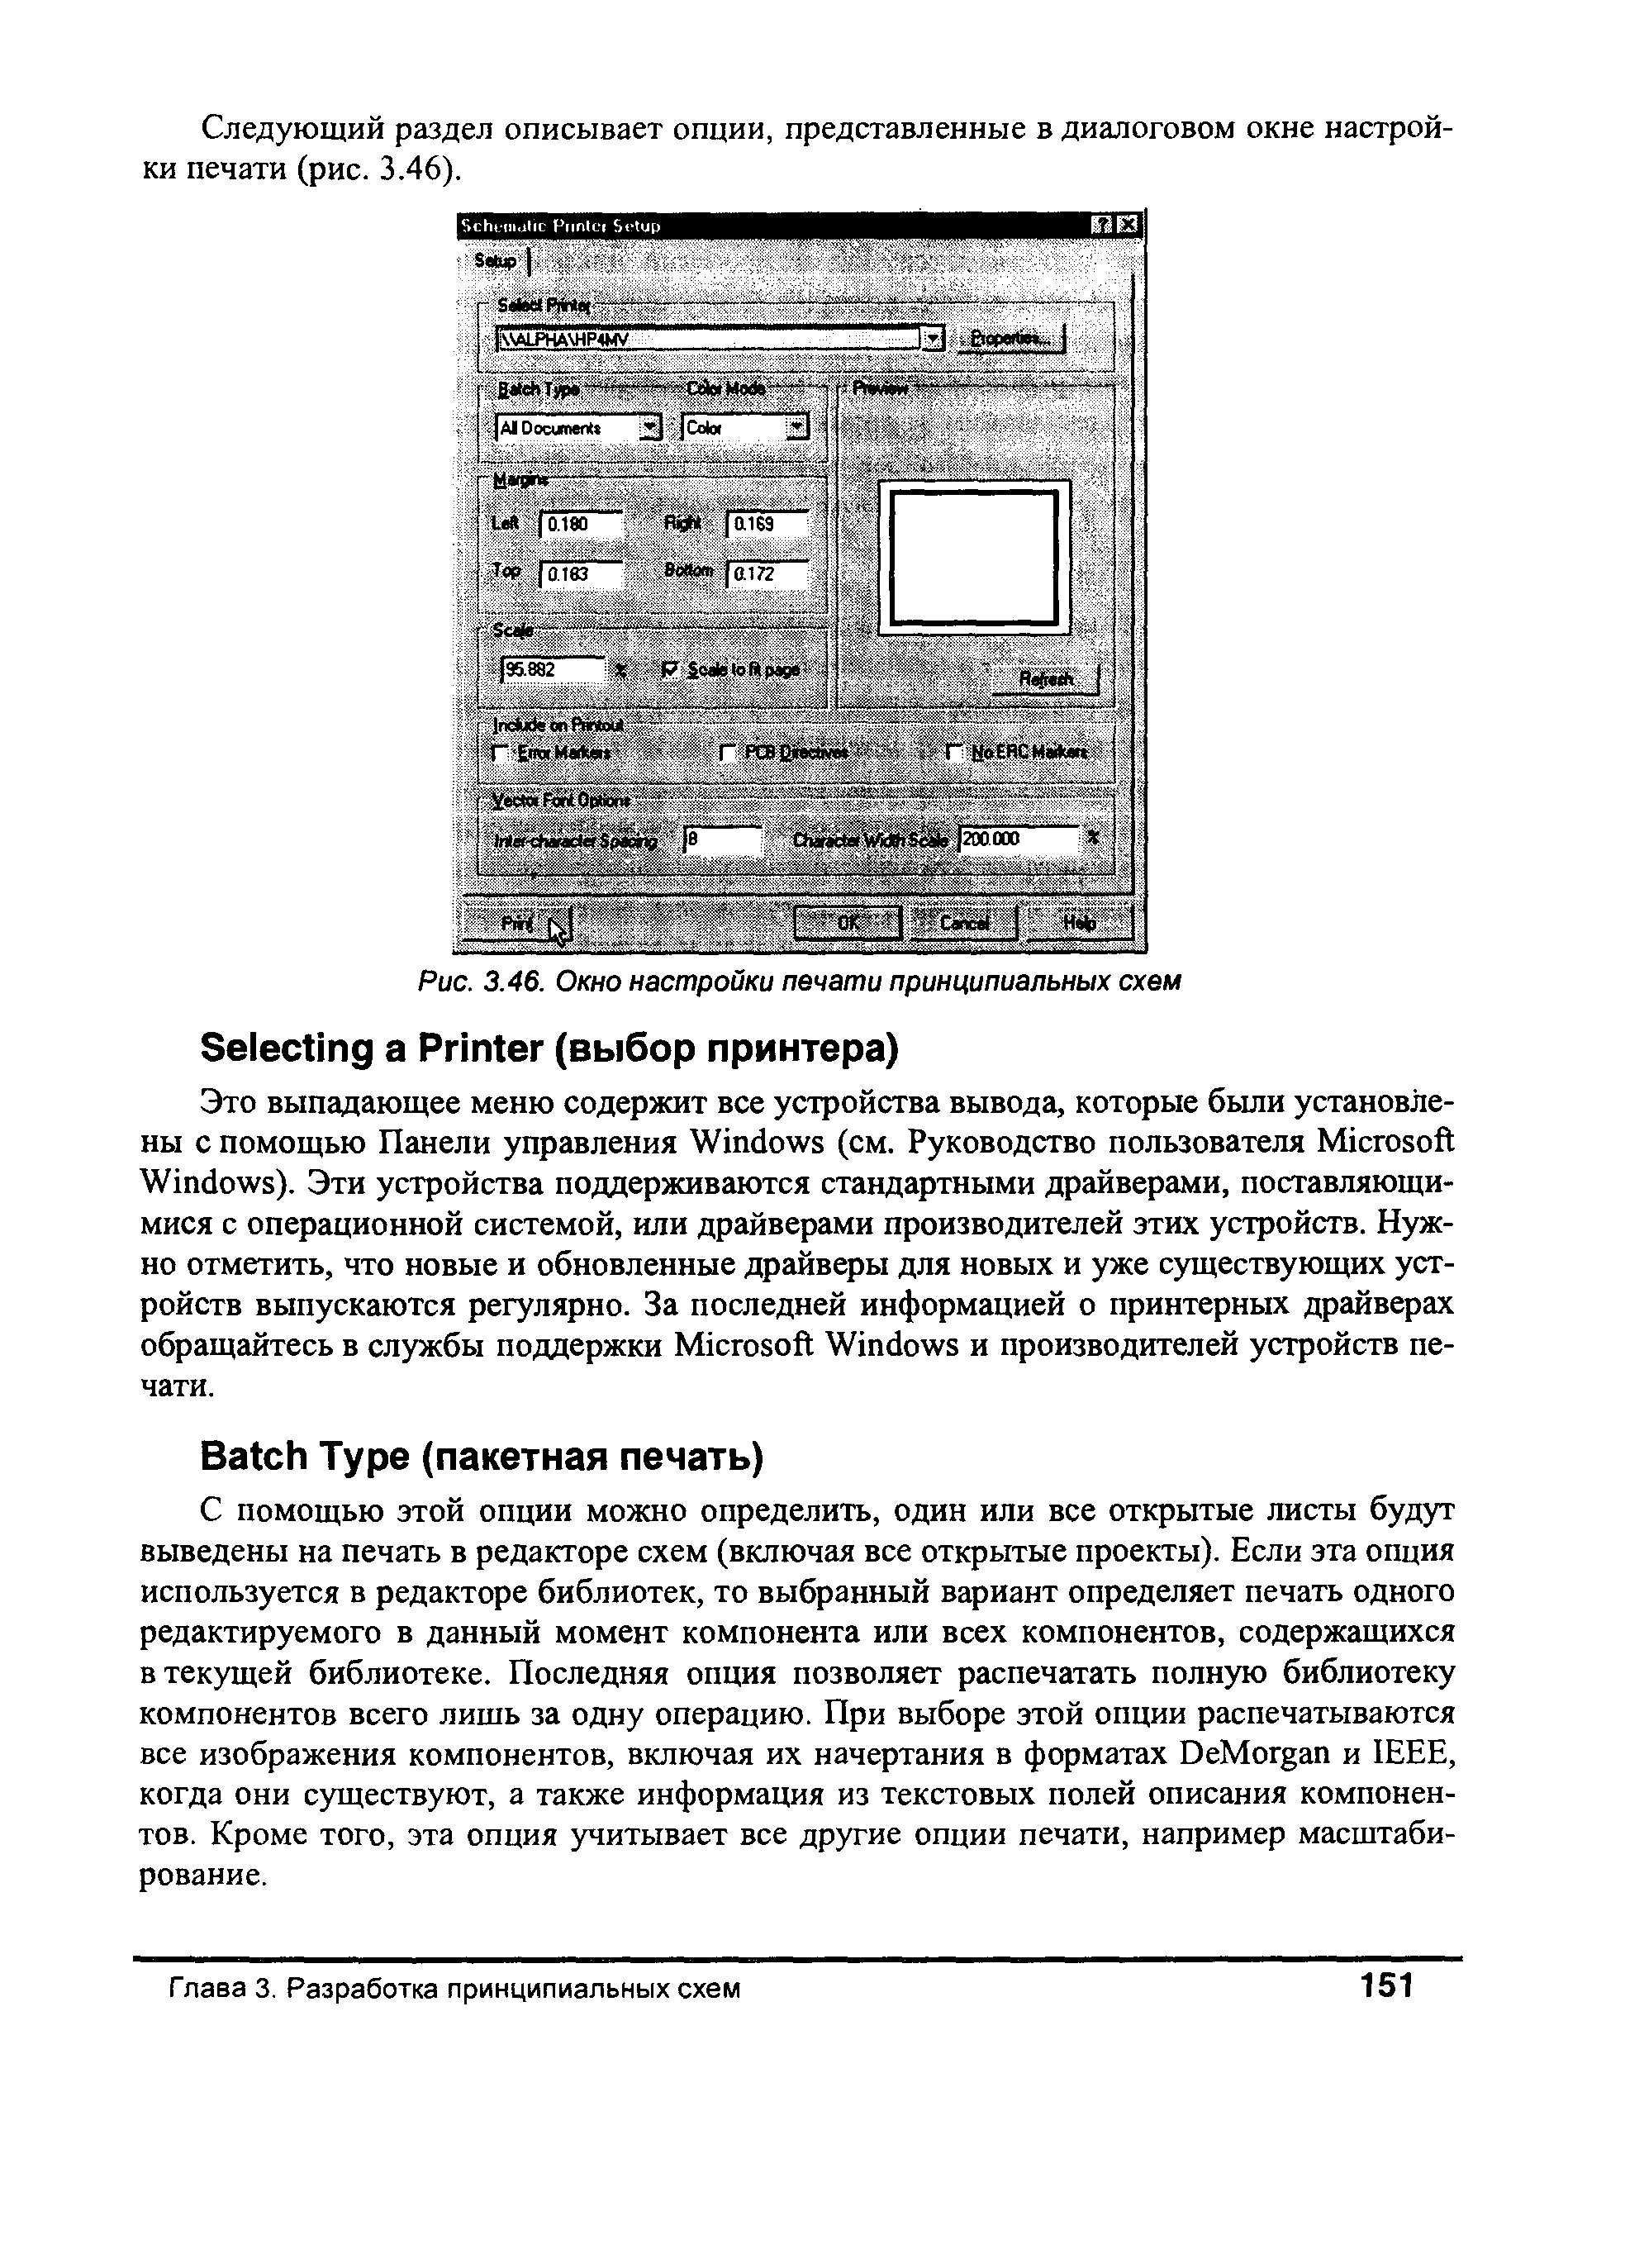 Следующий раздел описывает опции, представленные в диалоговом окне настройки печати (рис. 3.46).
